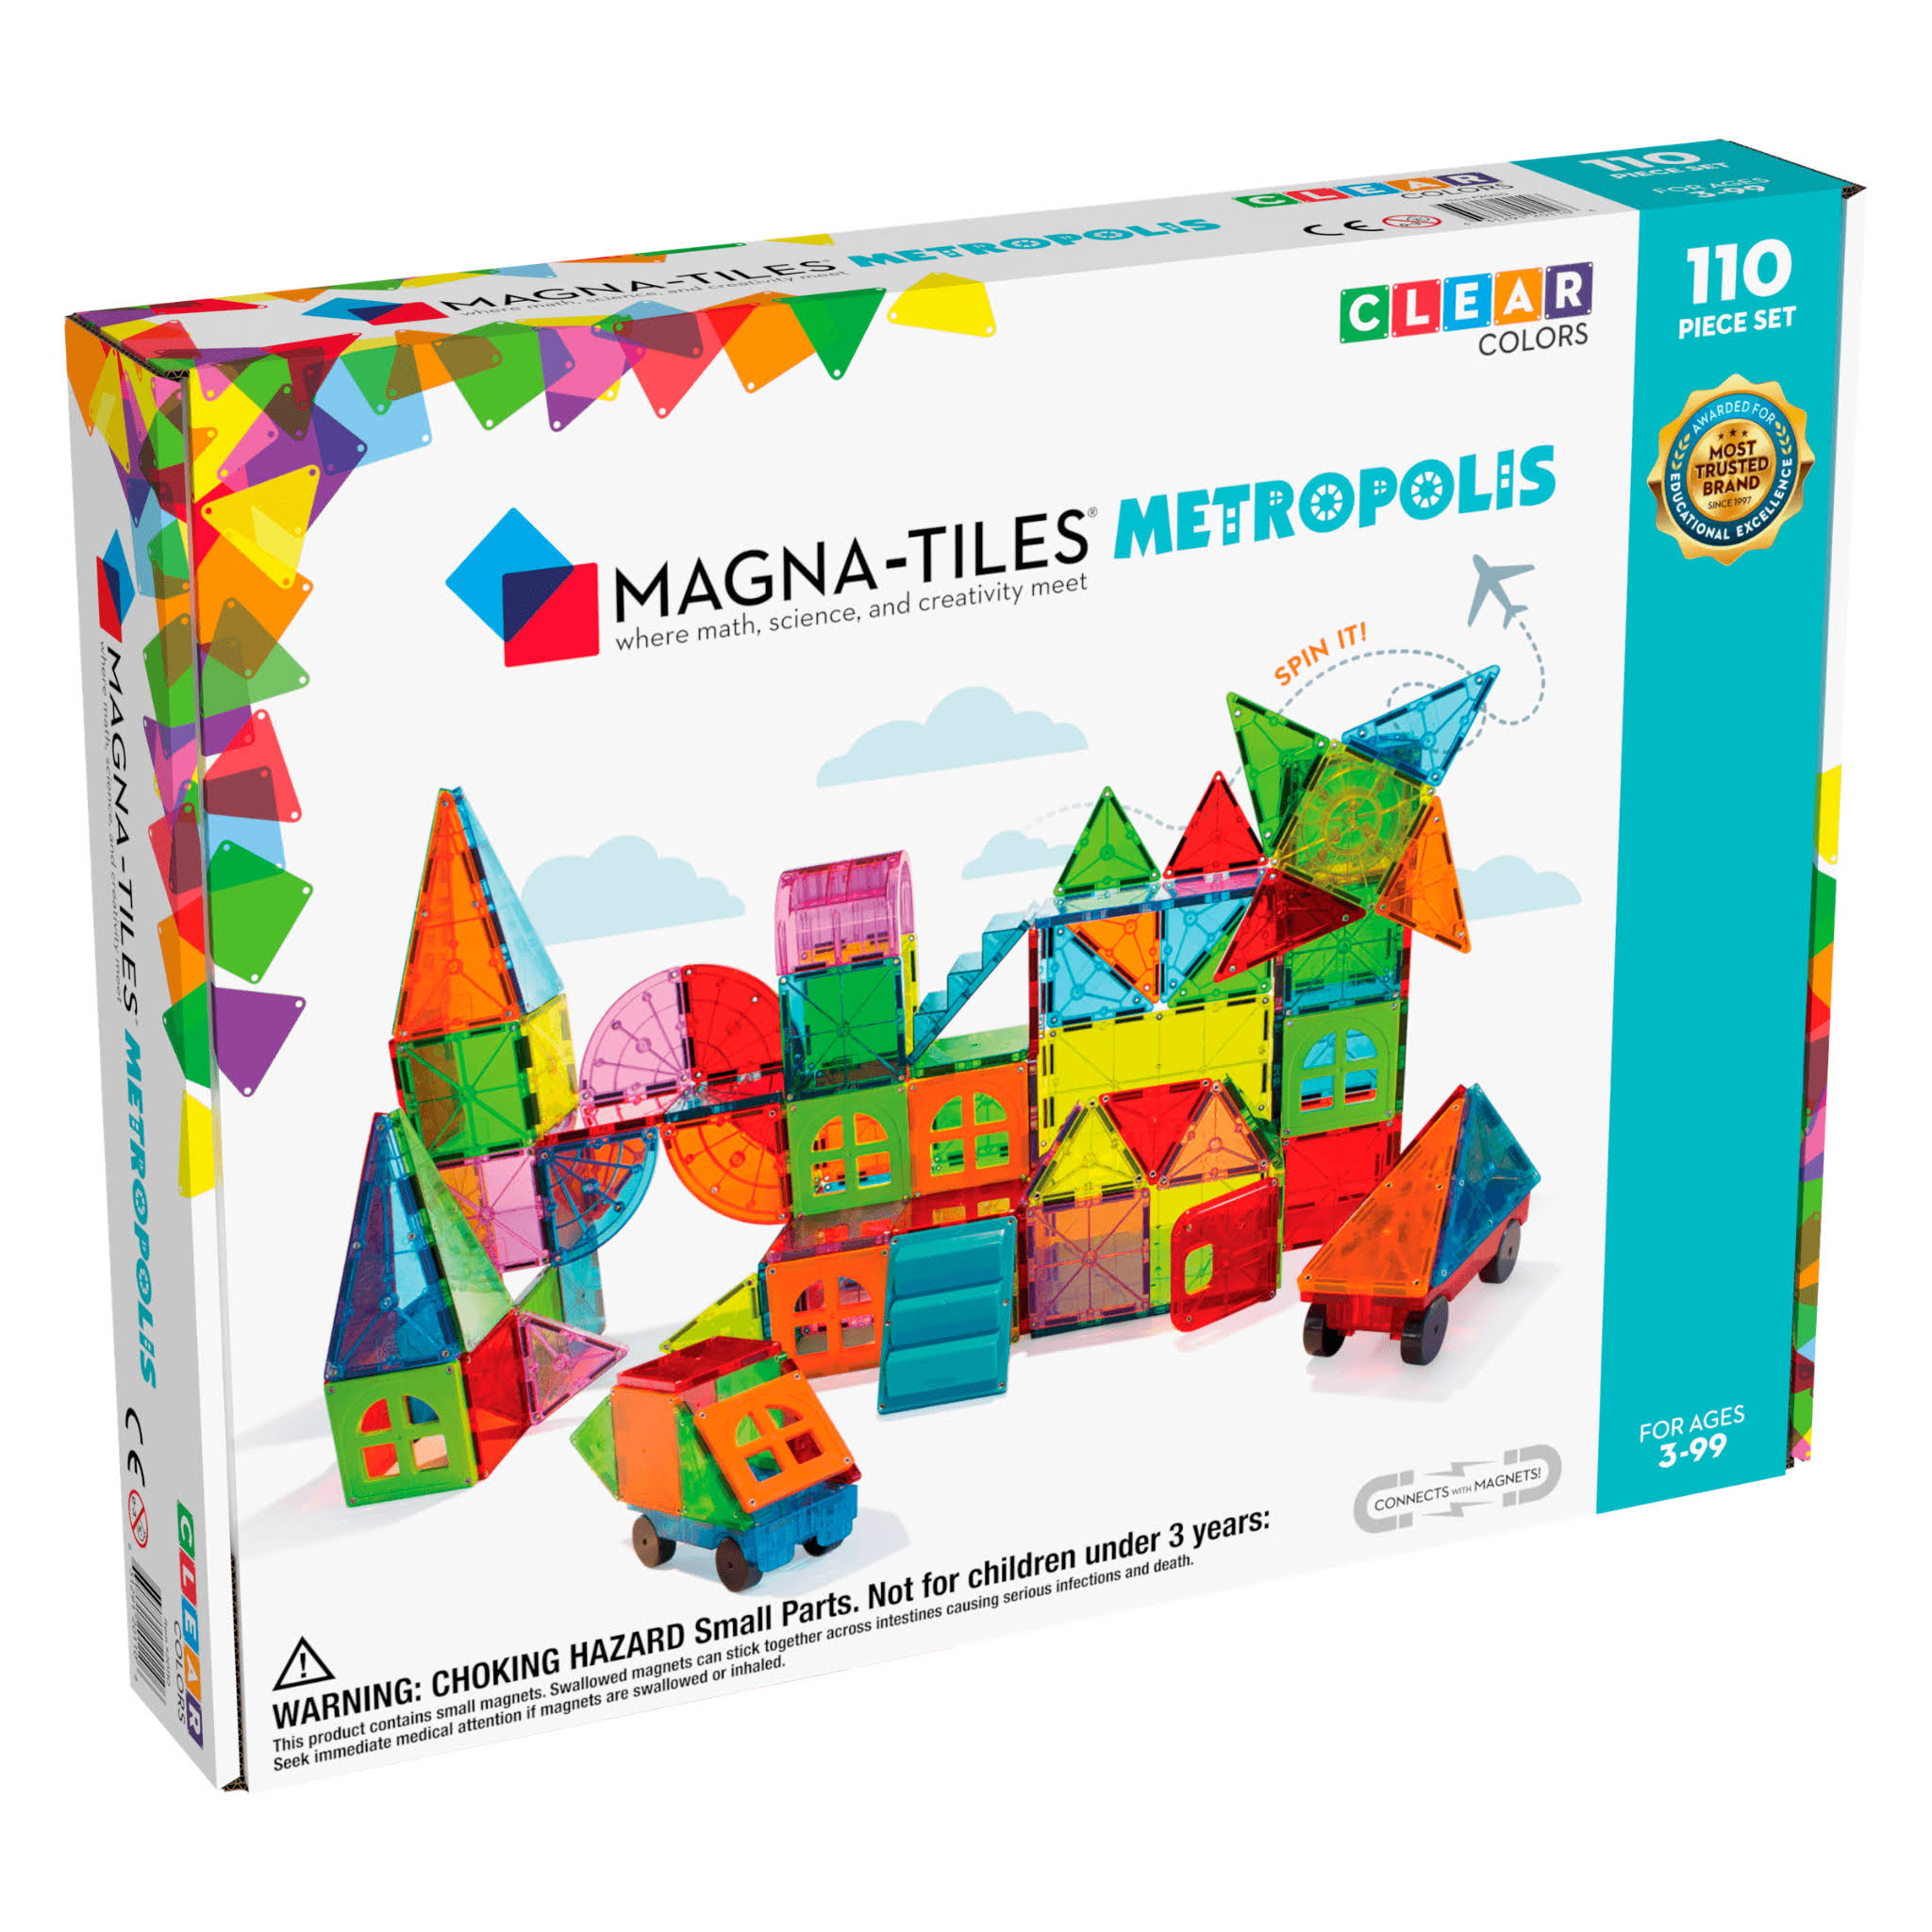 Magna Tiles Metropolis 110 Piece Set - 3D Magnetic Building Tiles